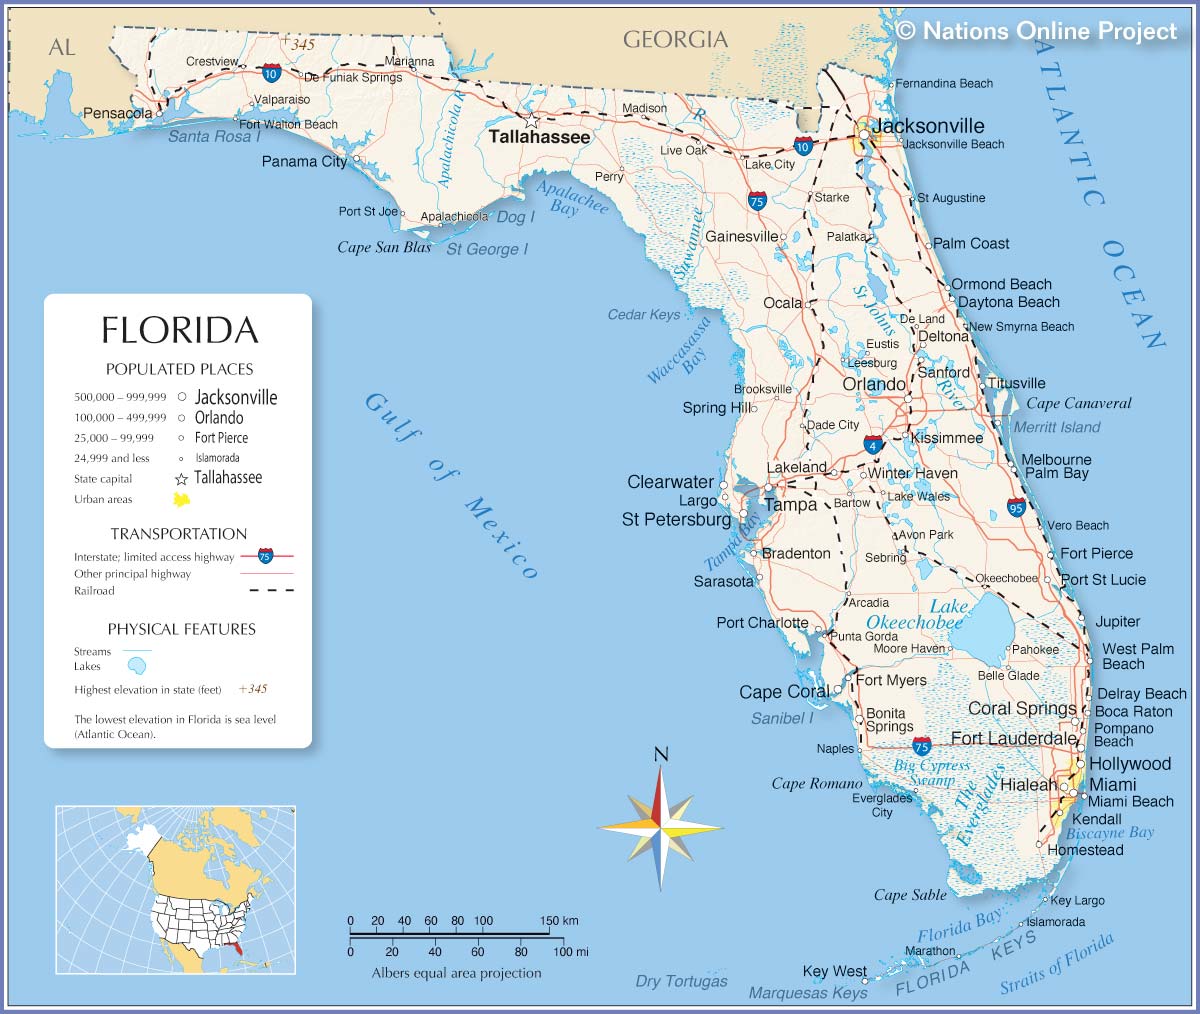 The Beautiful Florida Map of East Coast